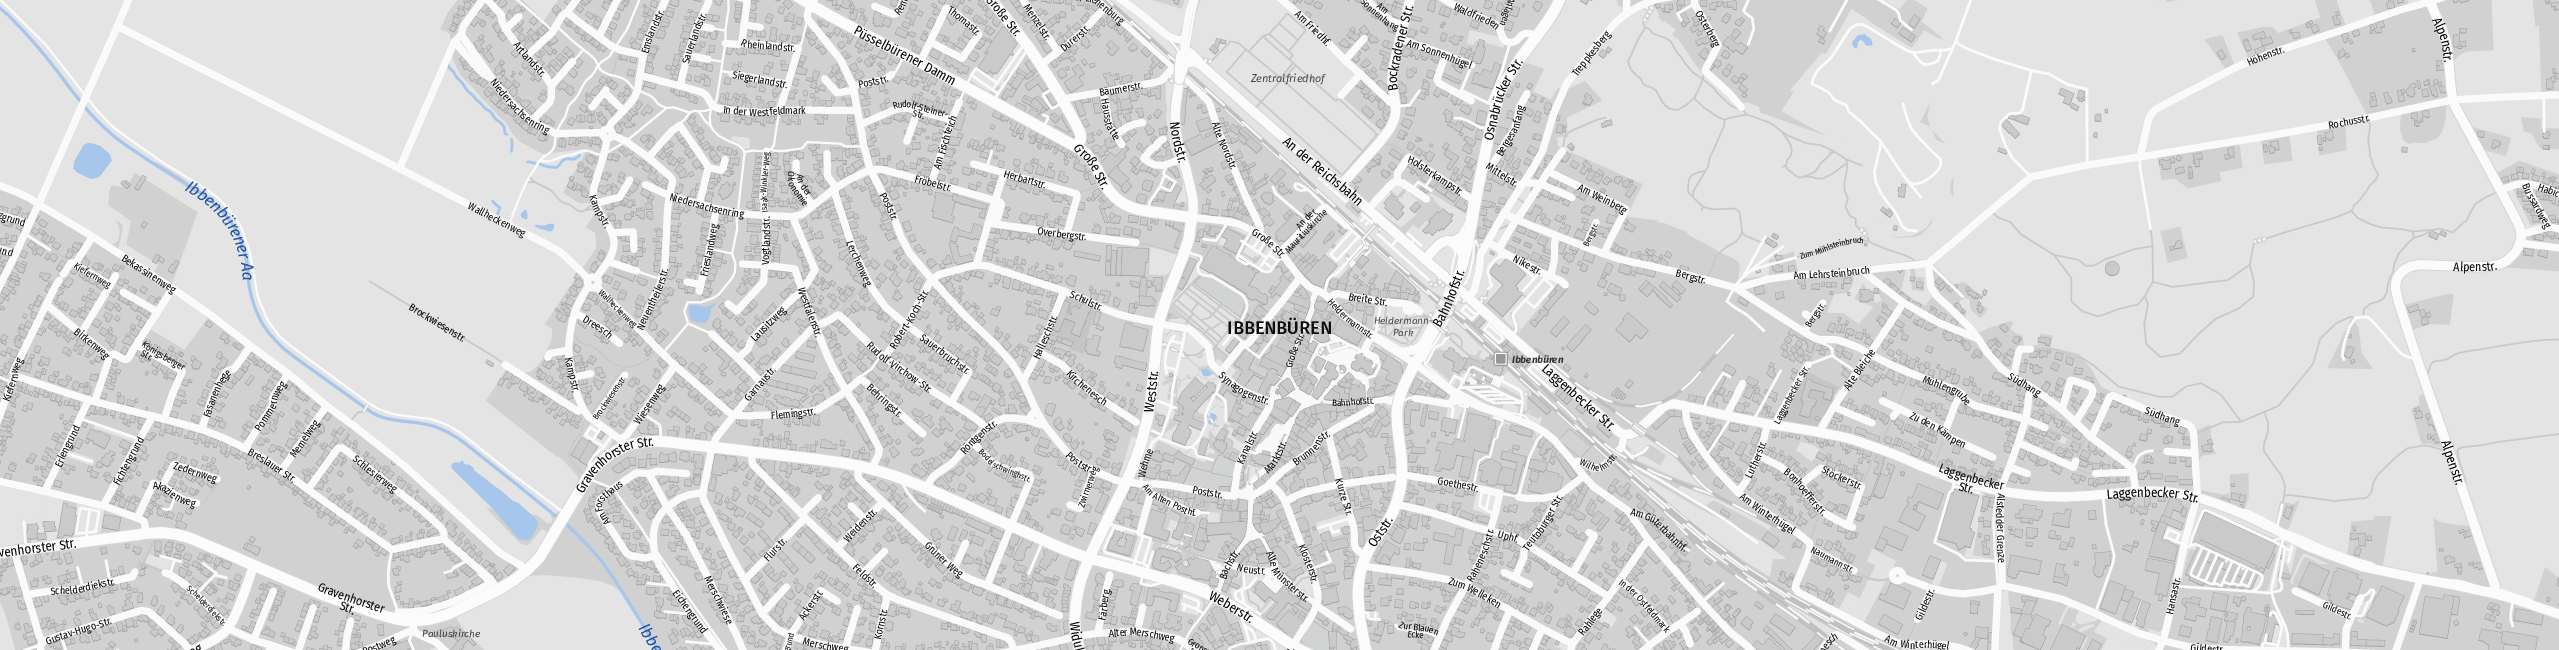 Stadtplan Ibbenbüren zum Downloaden.